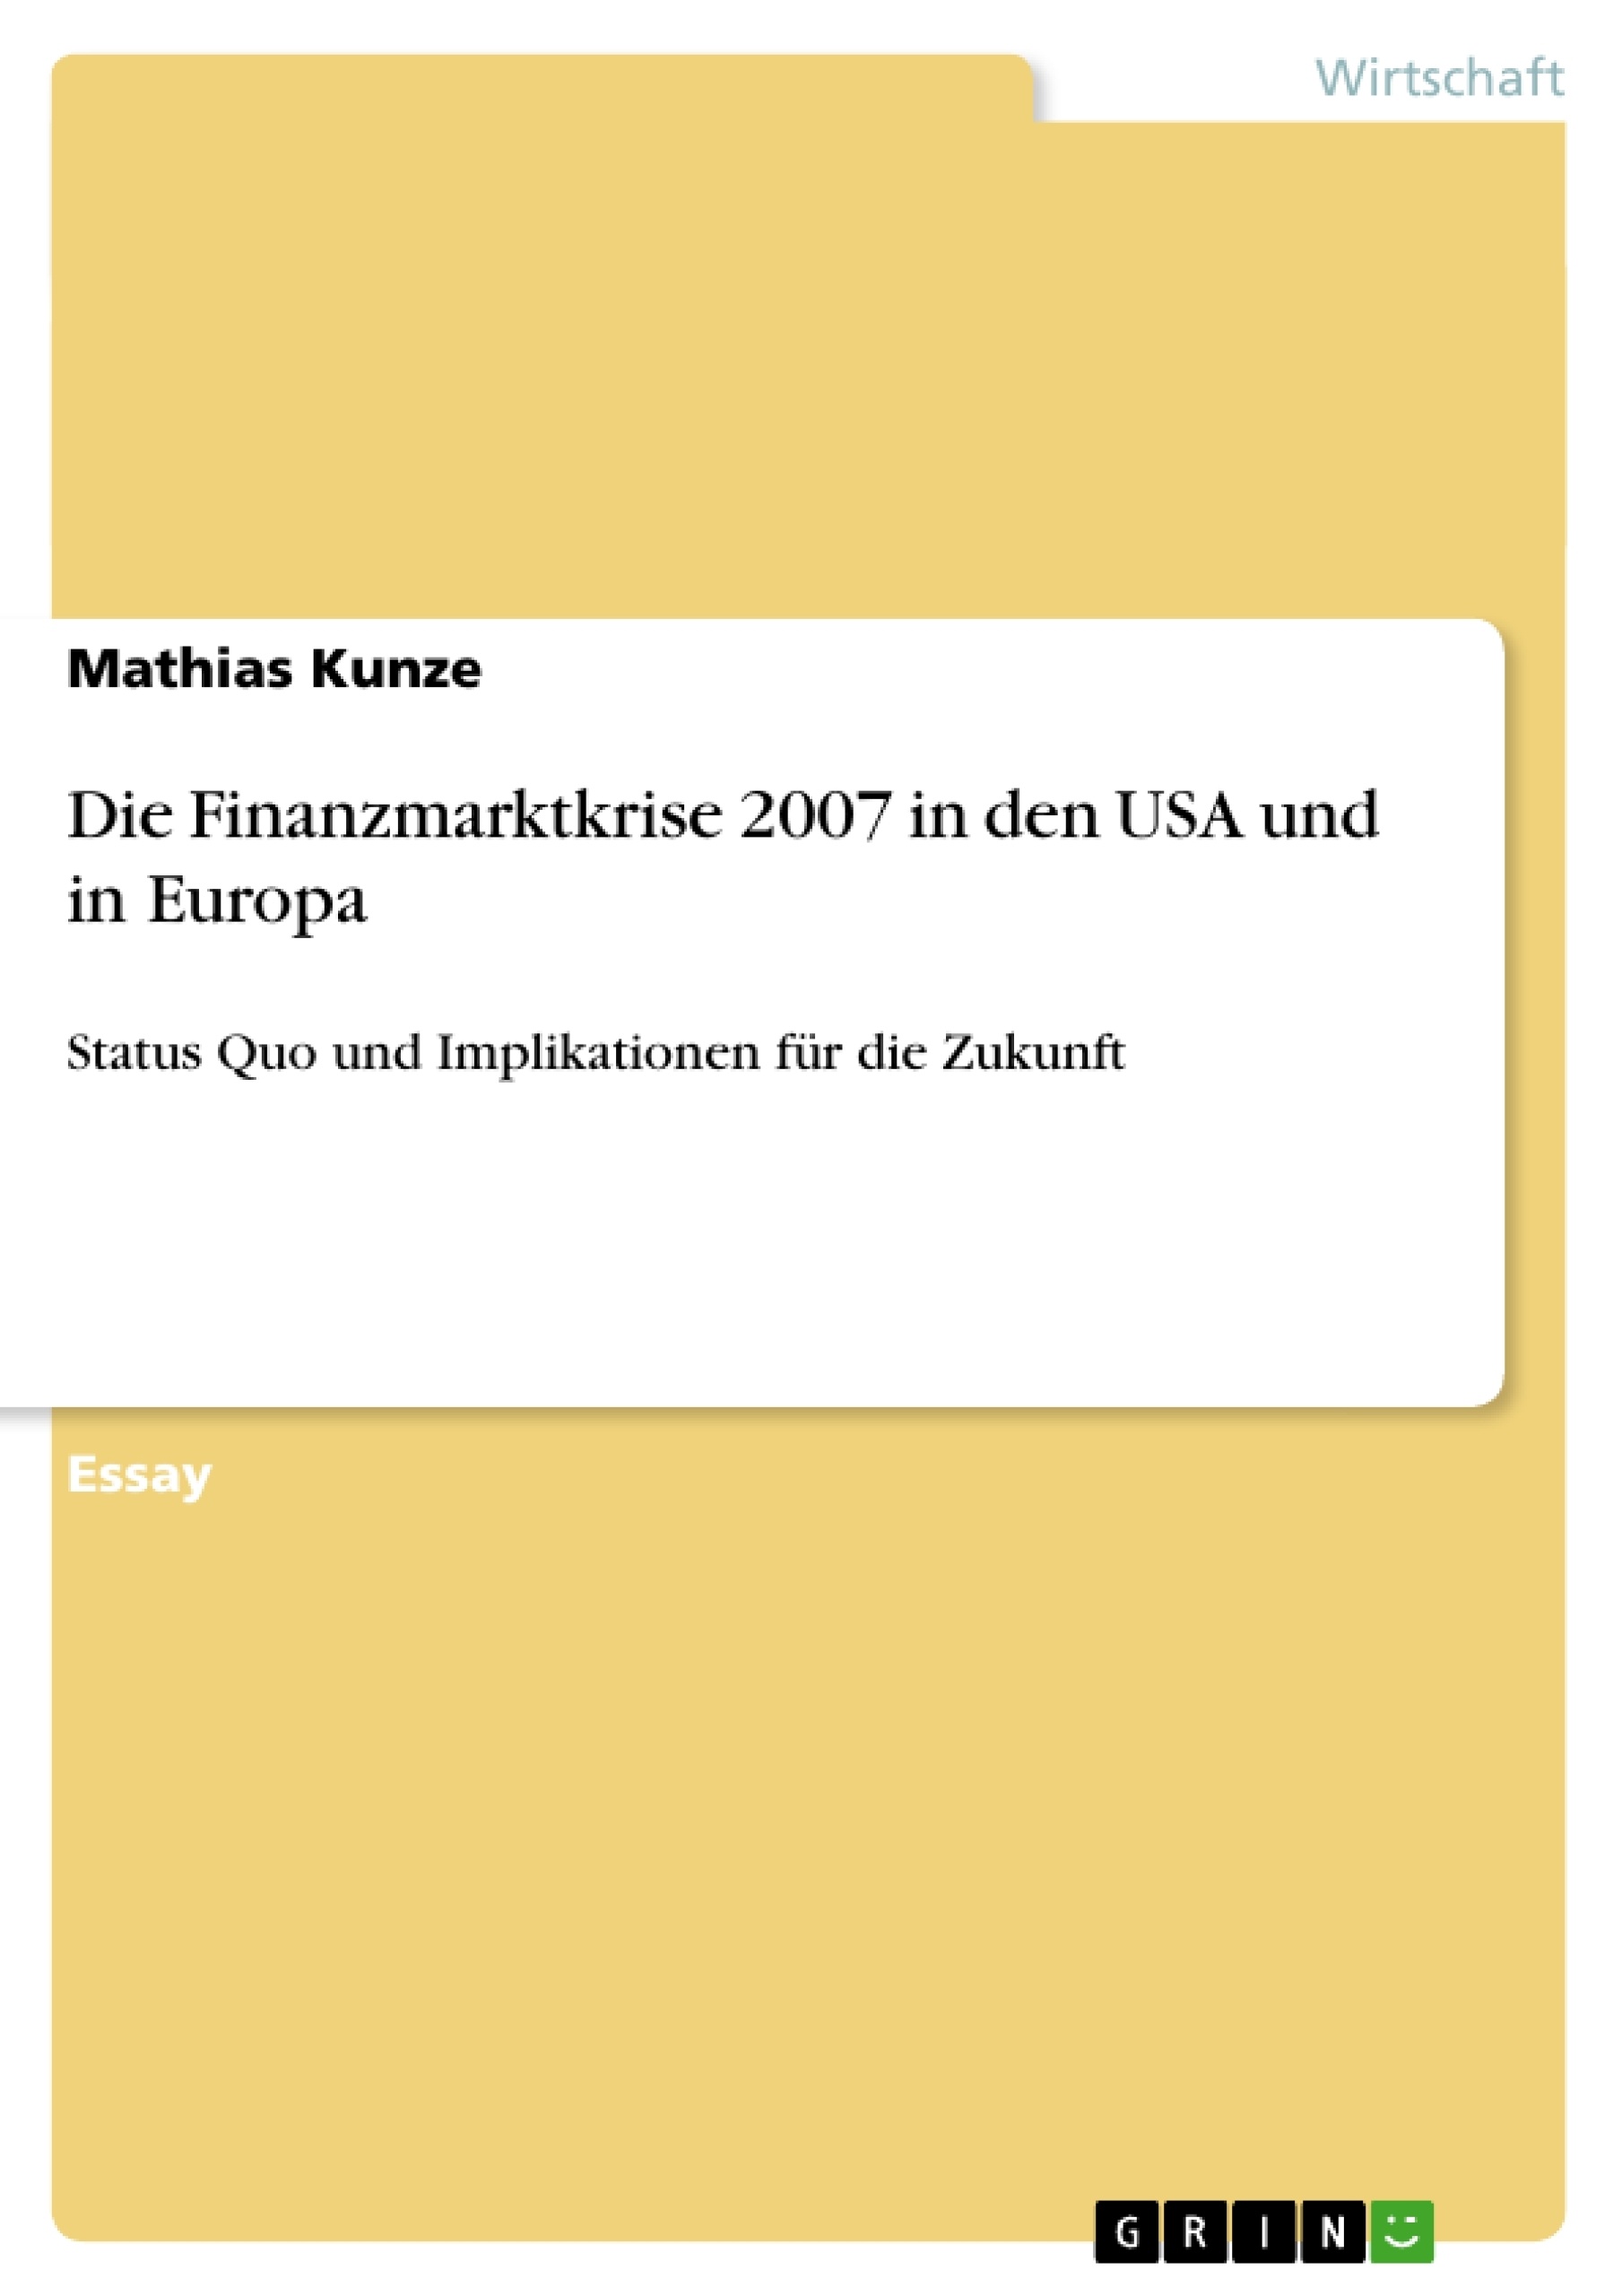 Title: Die Finanzmarktkrise 2007 in den USA und in Europa